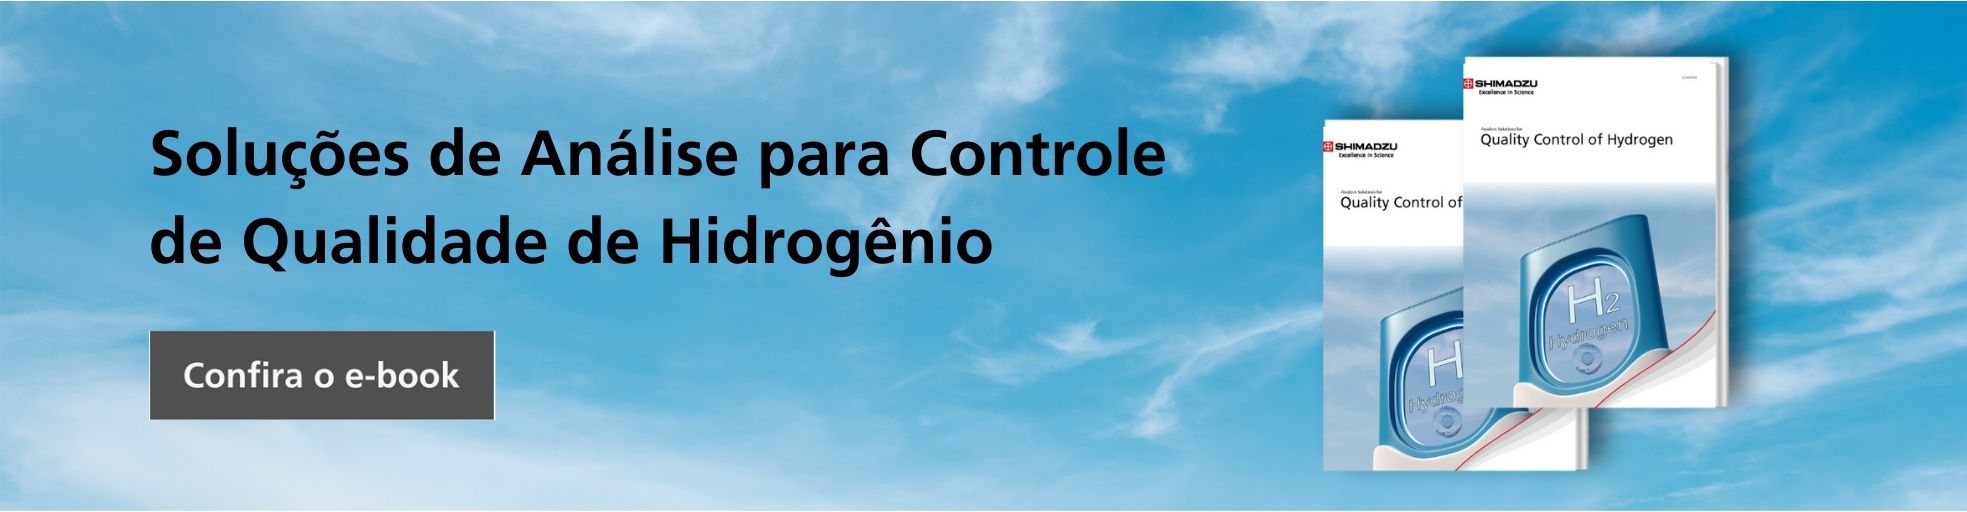 e-book sobre Análise para Controle de Qualidade de Hidrogênio.